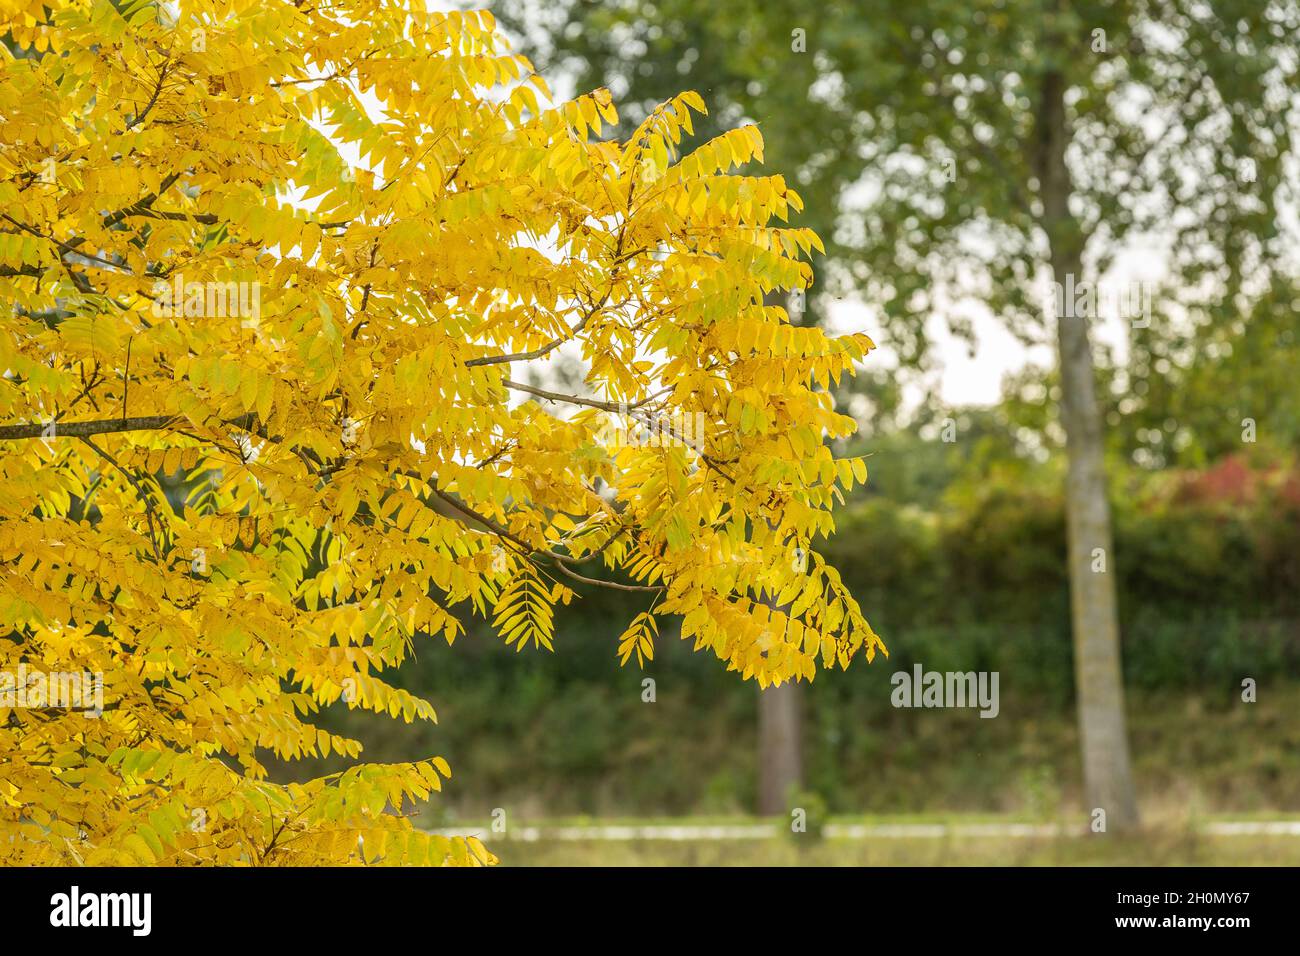 Nahaufnahme von Blättern aus schwarzem Walnuss, amerikanischem Walnuss, juglans nigra, in leuchtend gelber Herbstfärbung vor verschwommenem Hintergrund von grünen Bäumen und Sch Stockfoto